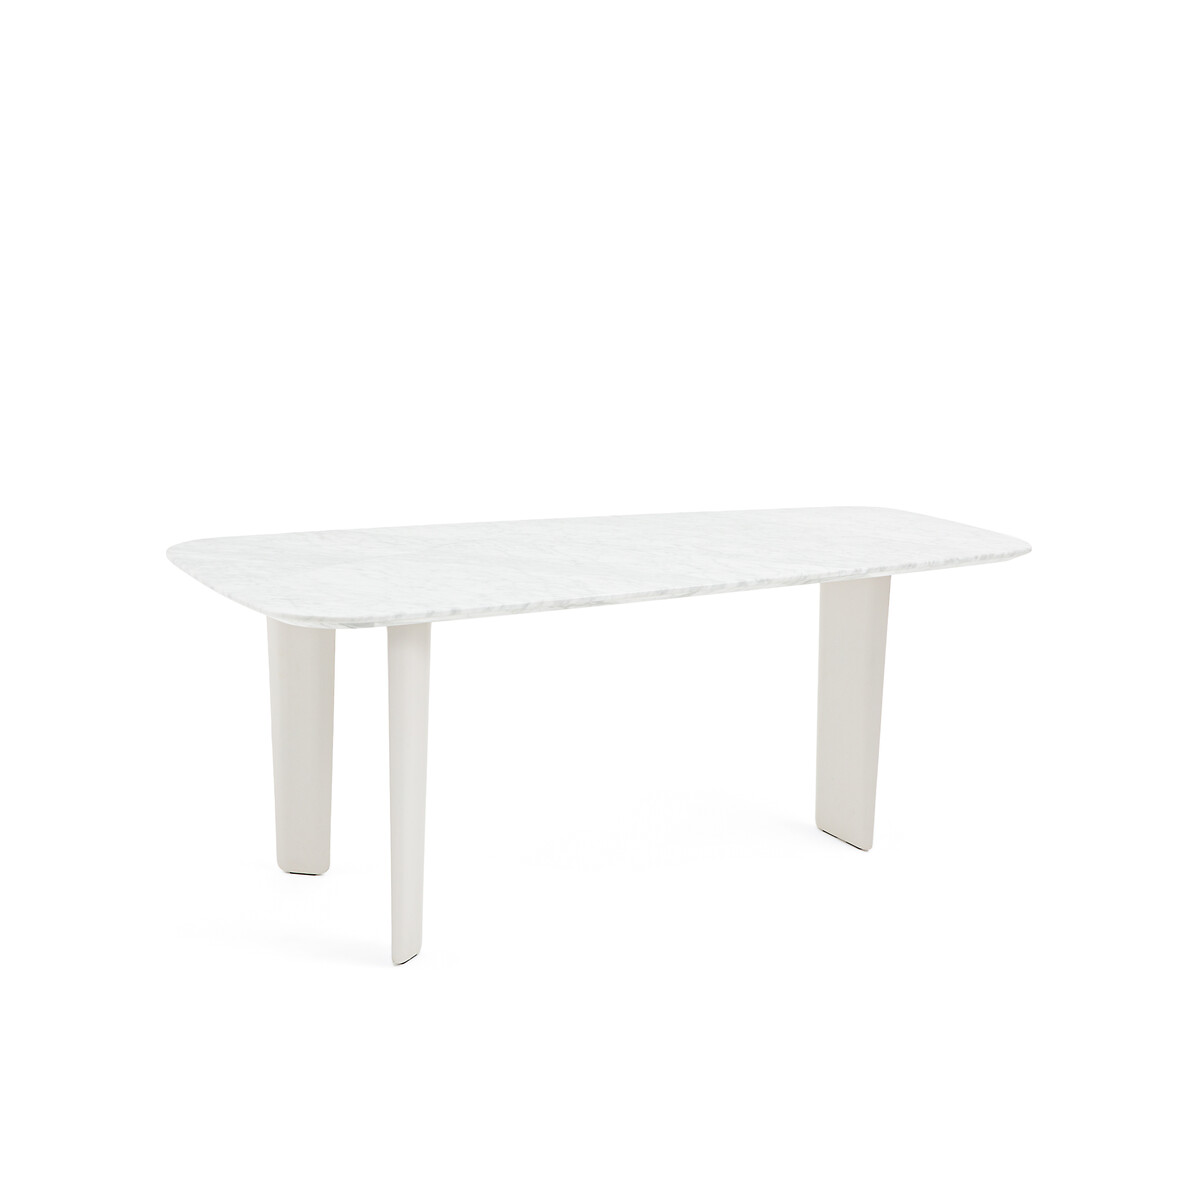 Стол обеденный из белого мрамора Dolmena на 6 персон белый стол журнальный из белого мрамора dolmena единый размер белый